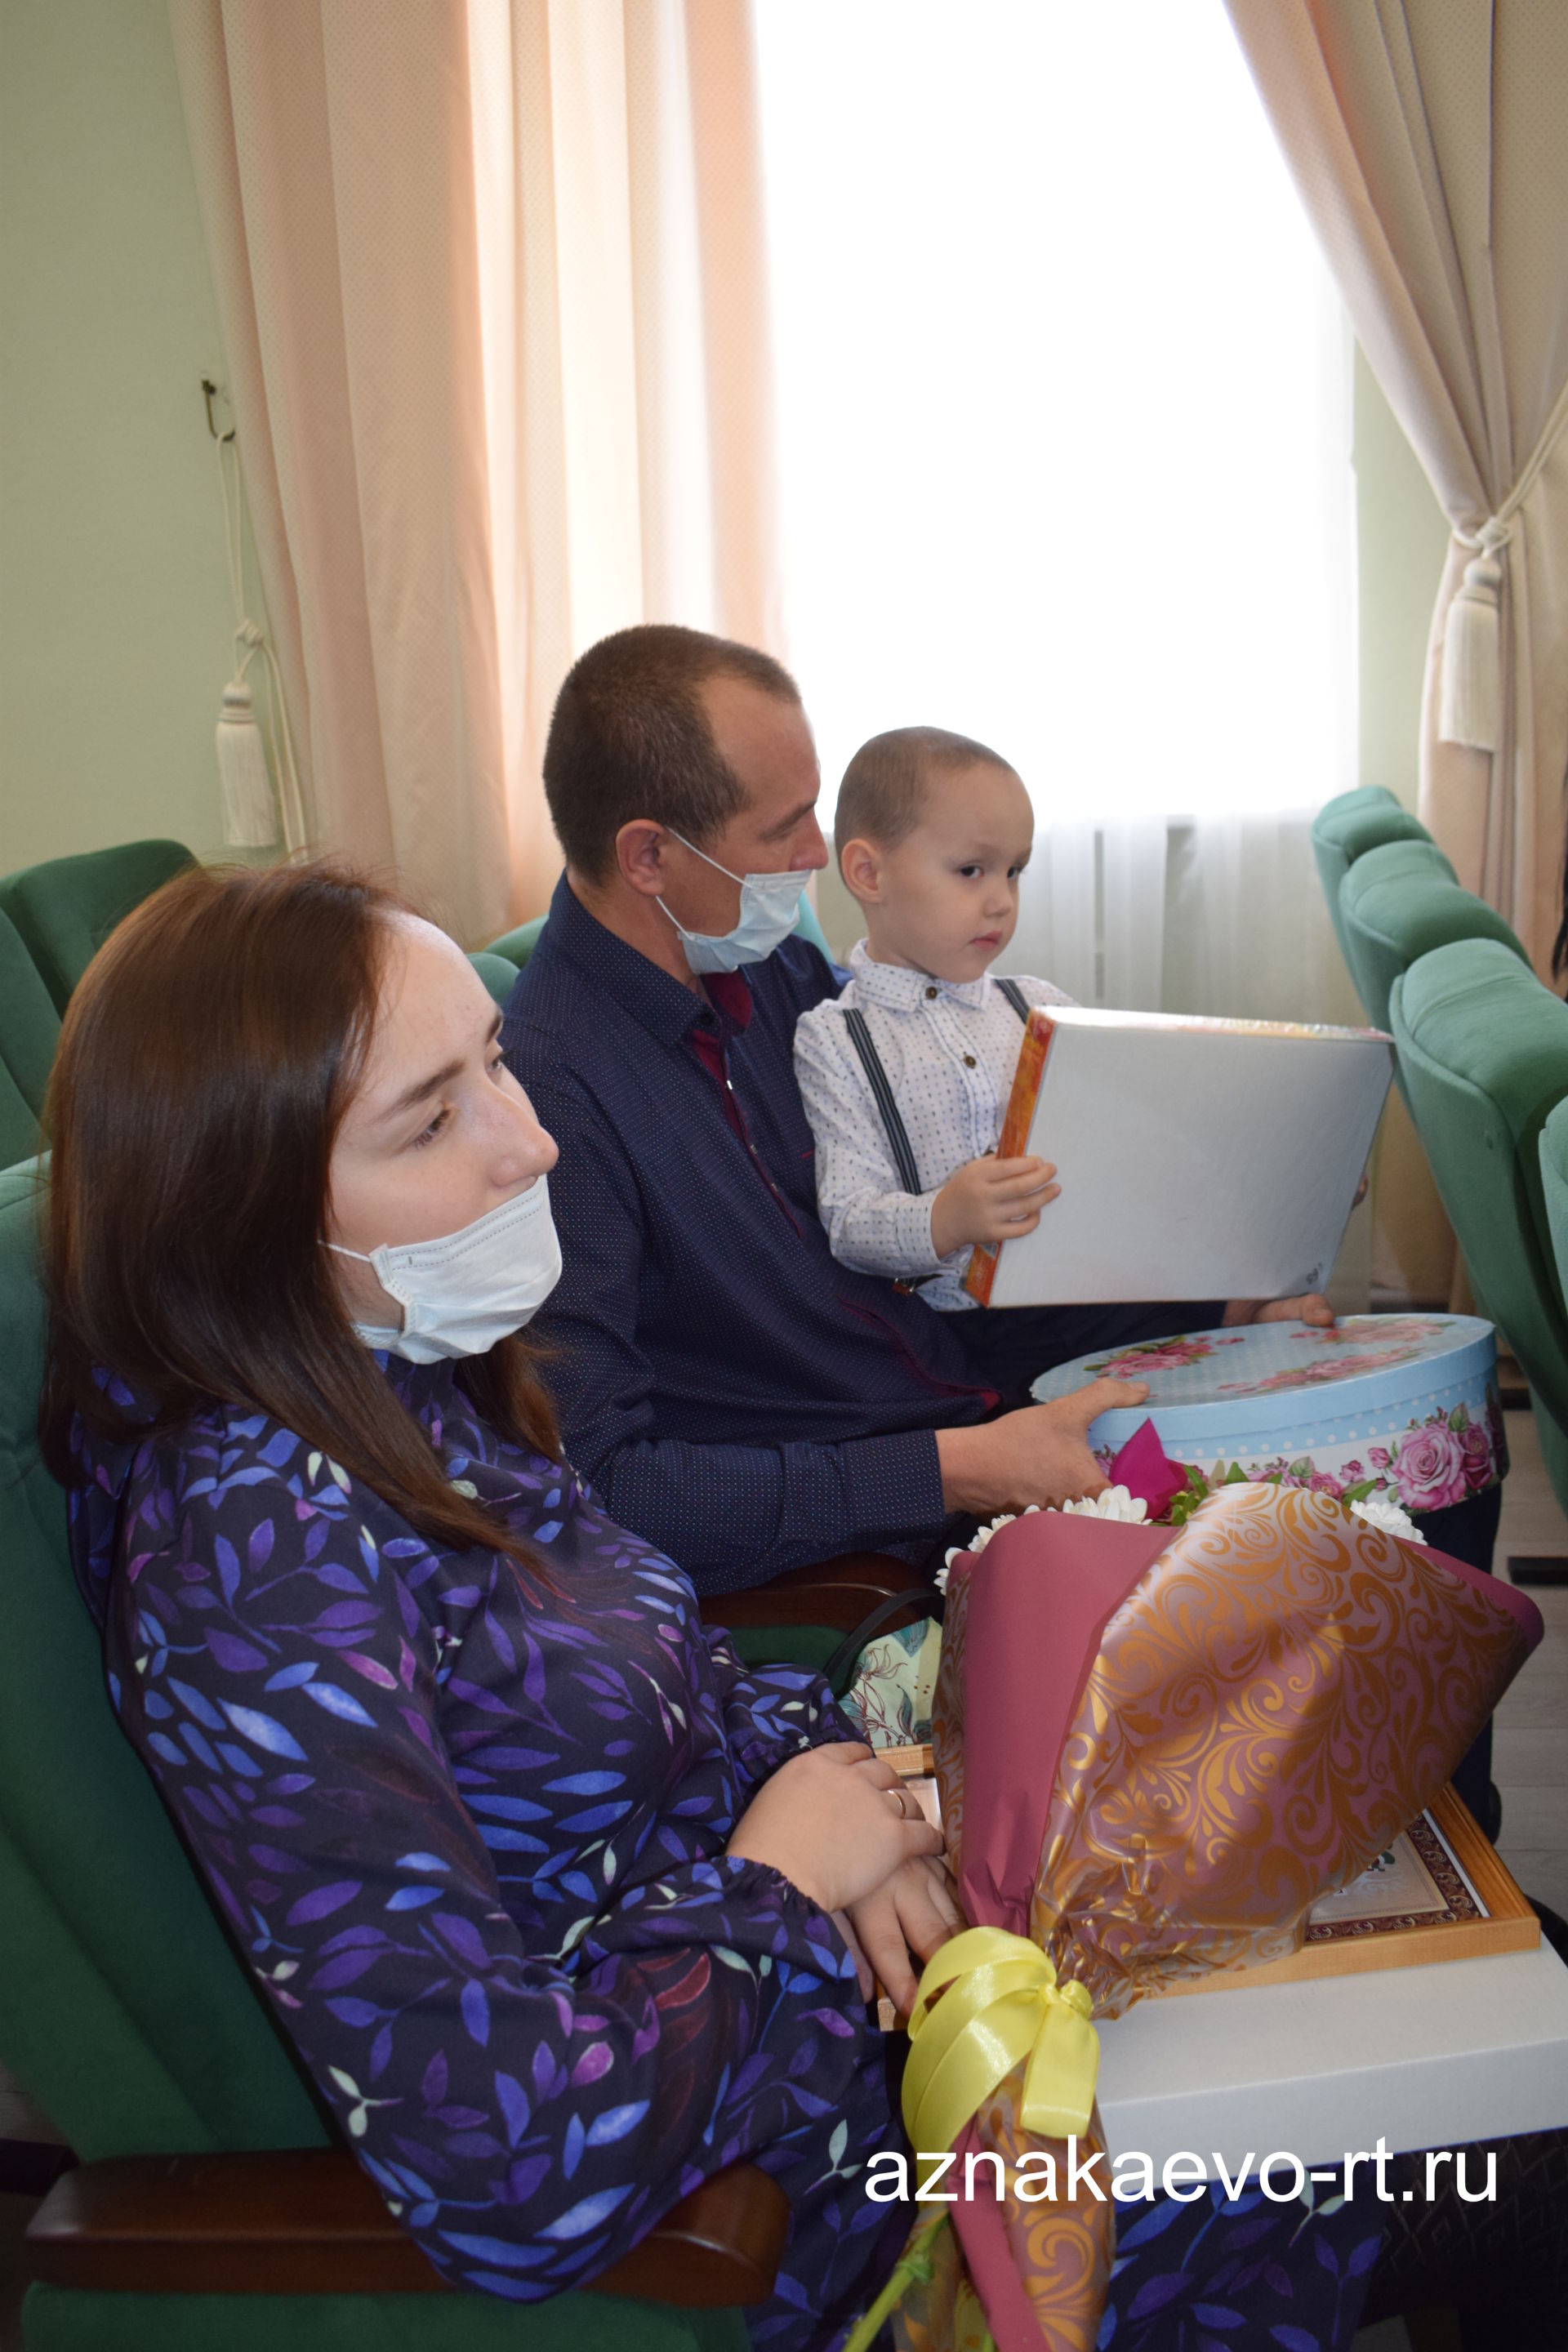 15 азнакаевских семей получили жилищные сертификаты